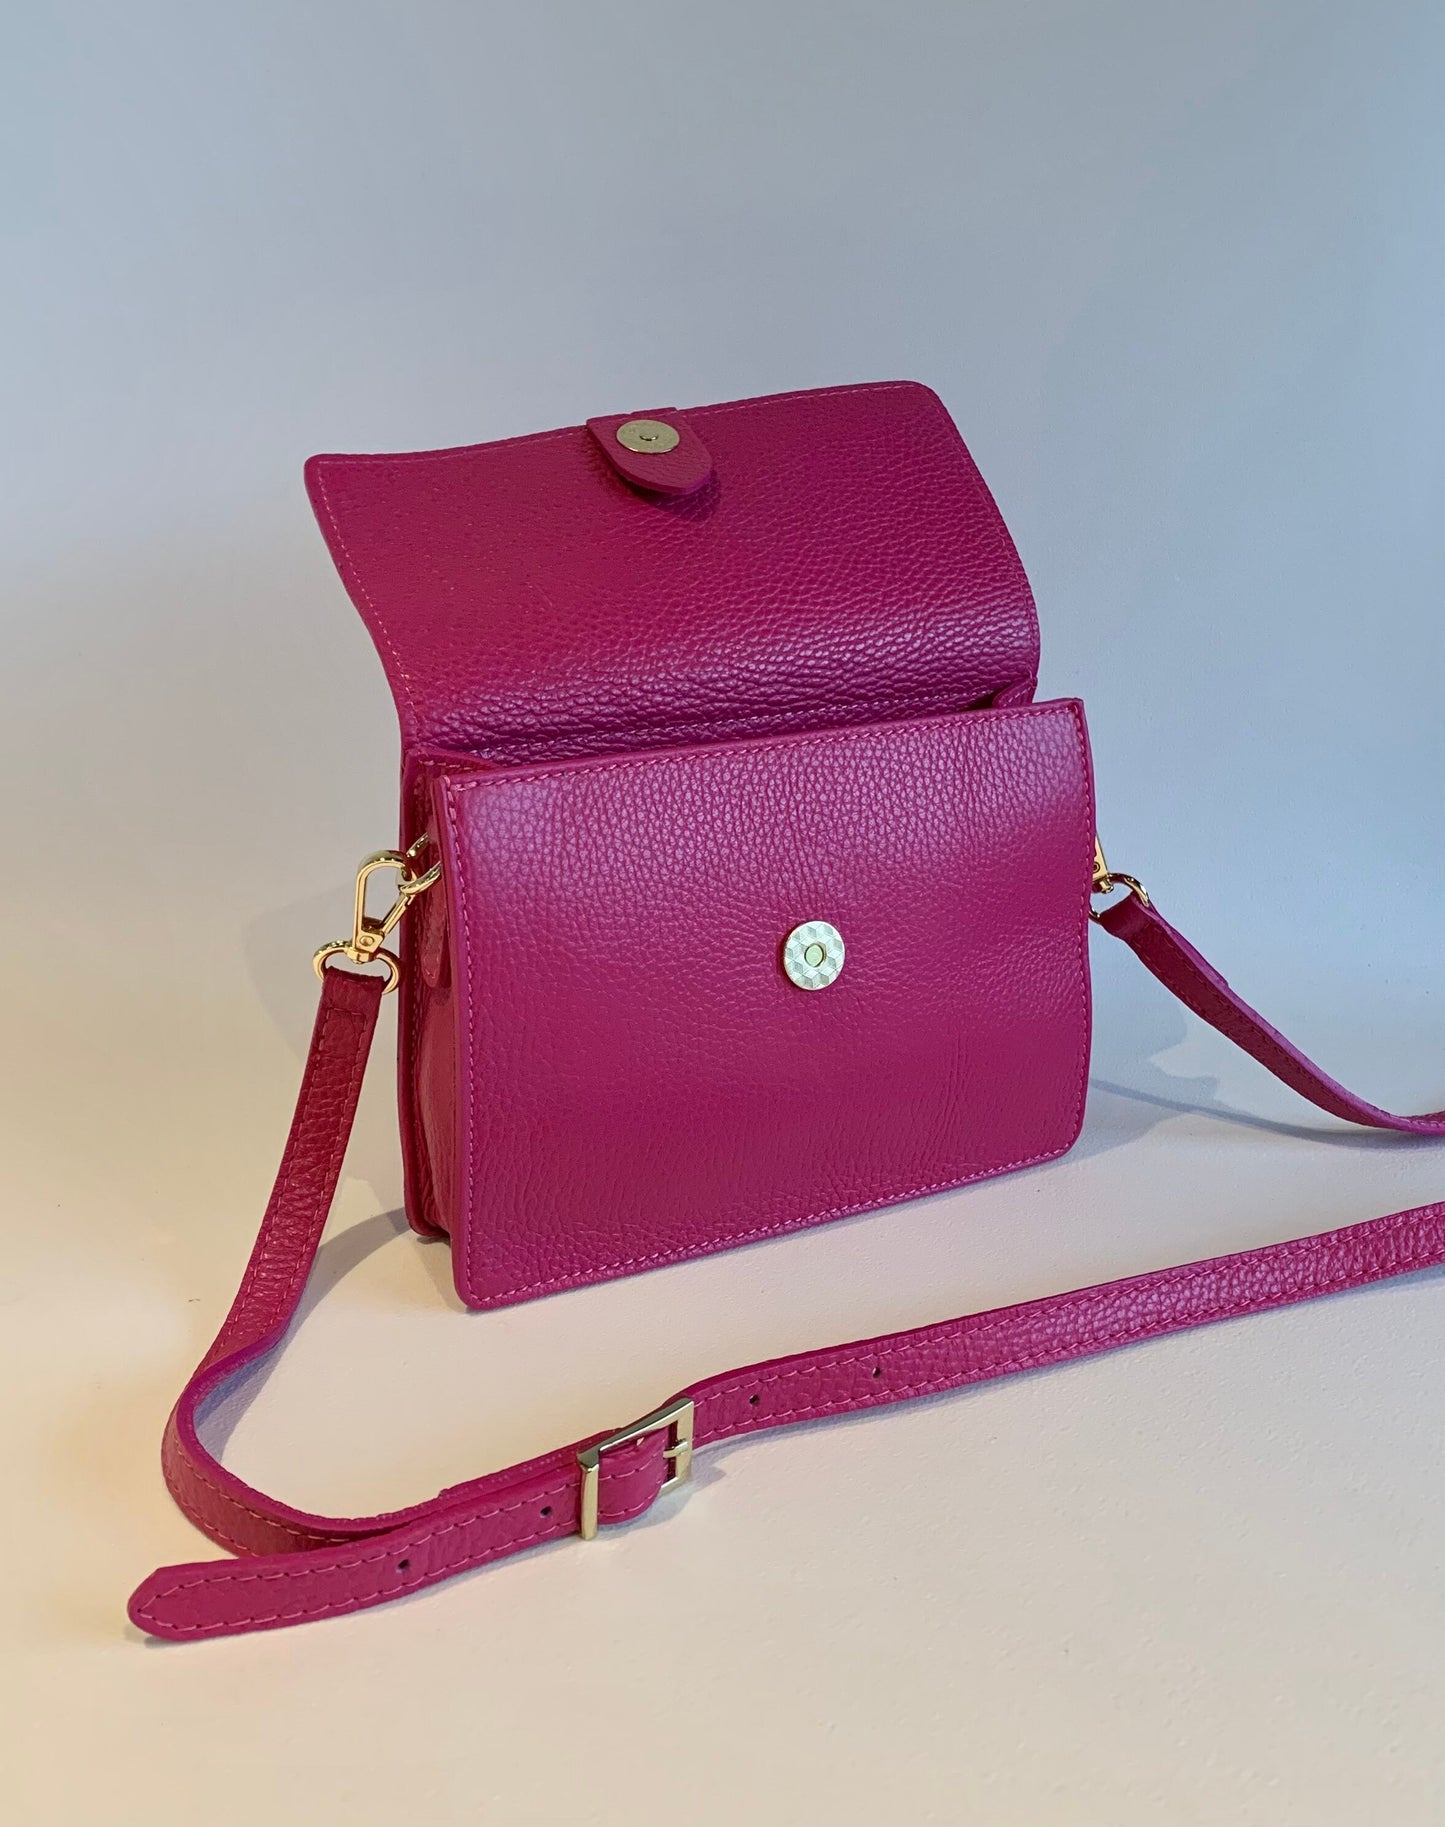 Fuchsia Leather Minimalistic Bag - Zoe